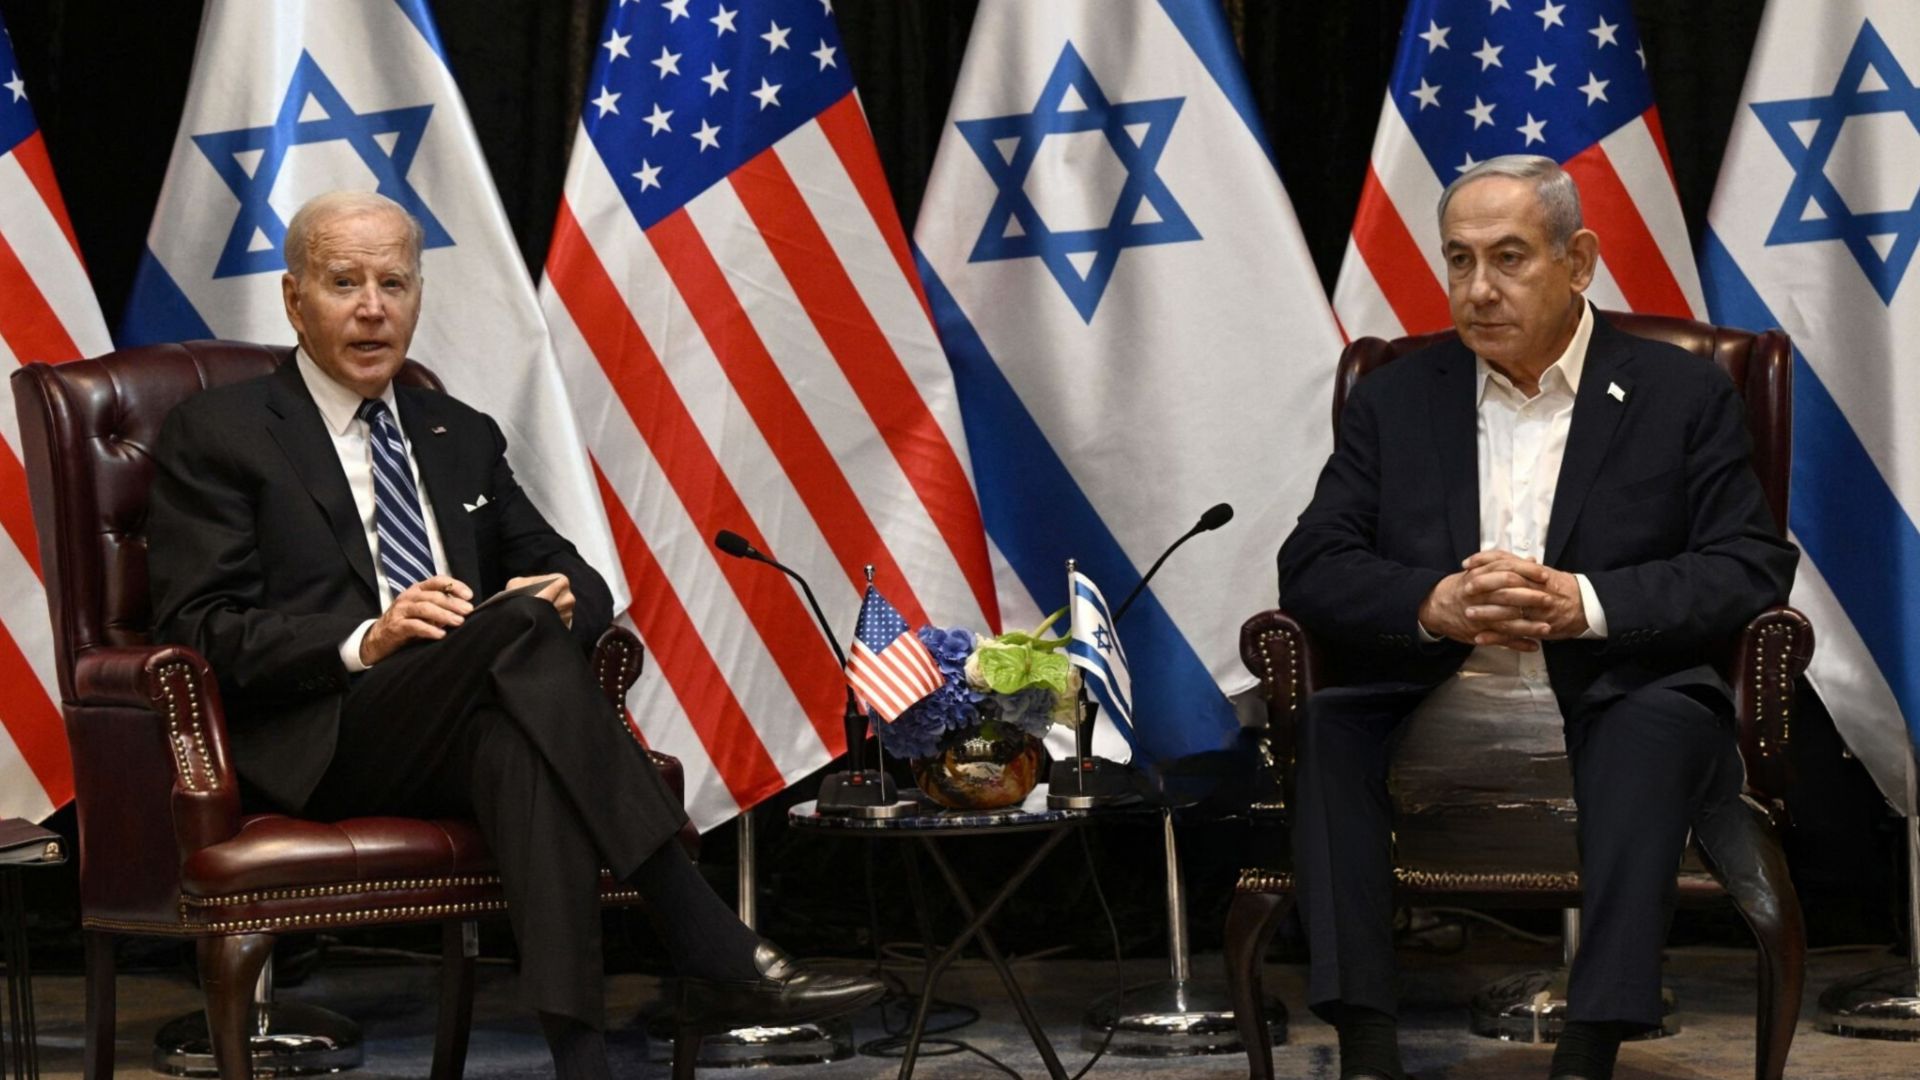 Netanyahu, de Israel, hablará en Congreso de los Estados Unidos sobre conflicto